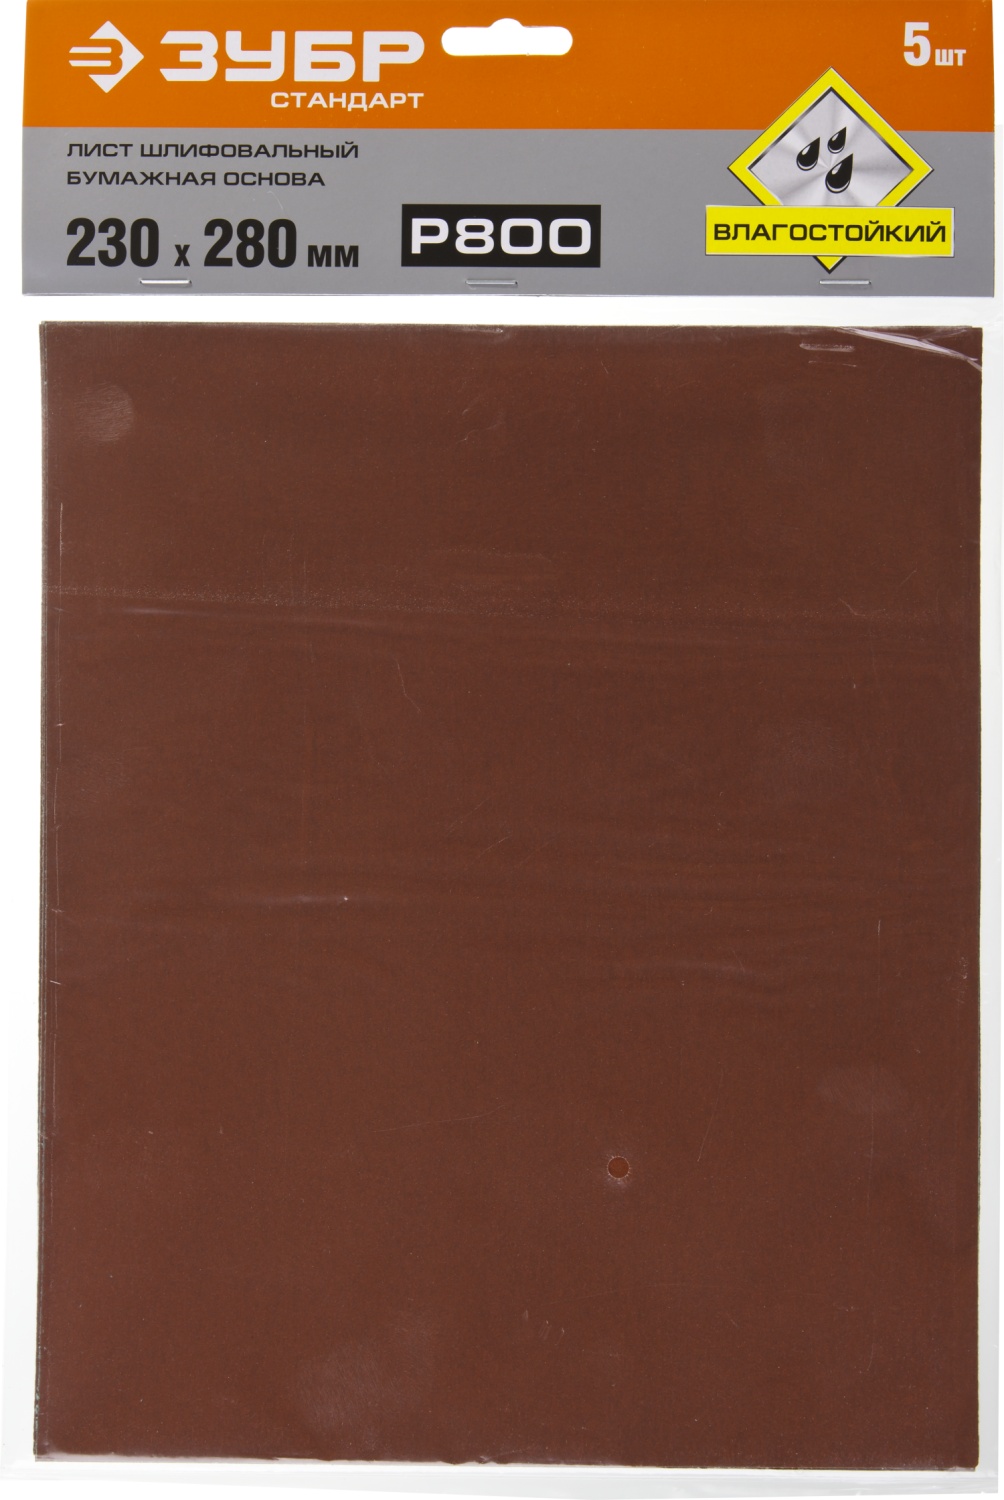 Лист шлифовальный водостойкий 230х280 мм ЗУБР Стандарт, бумажная основа, 5 шт - фото